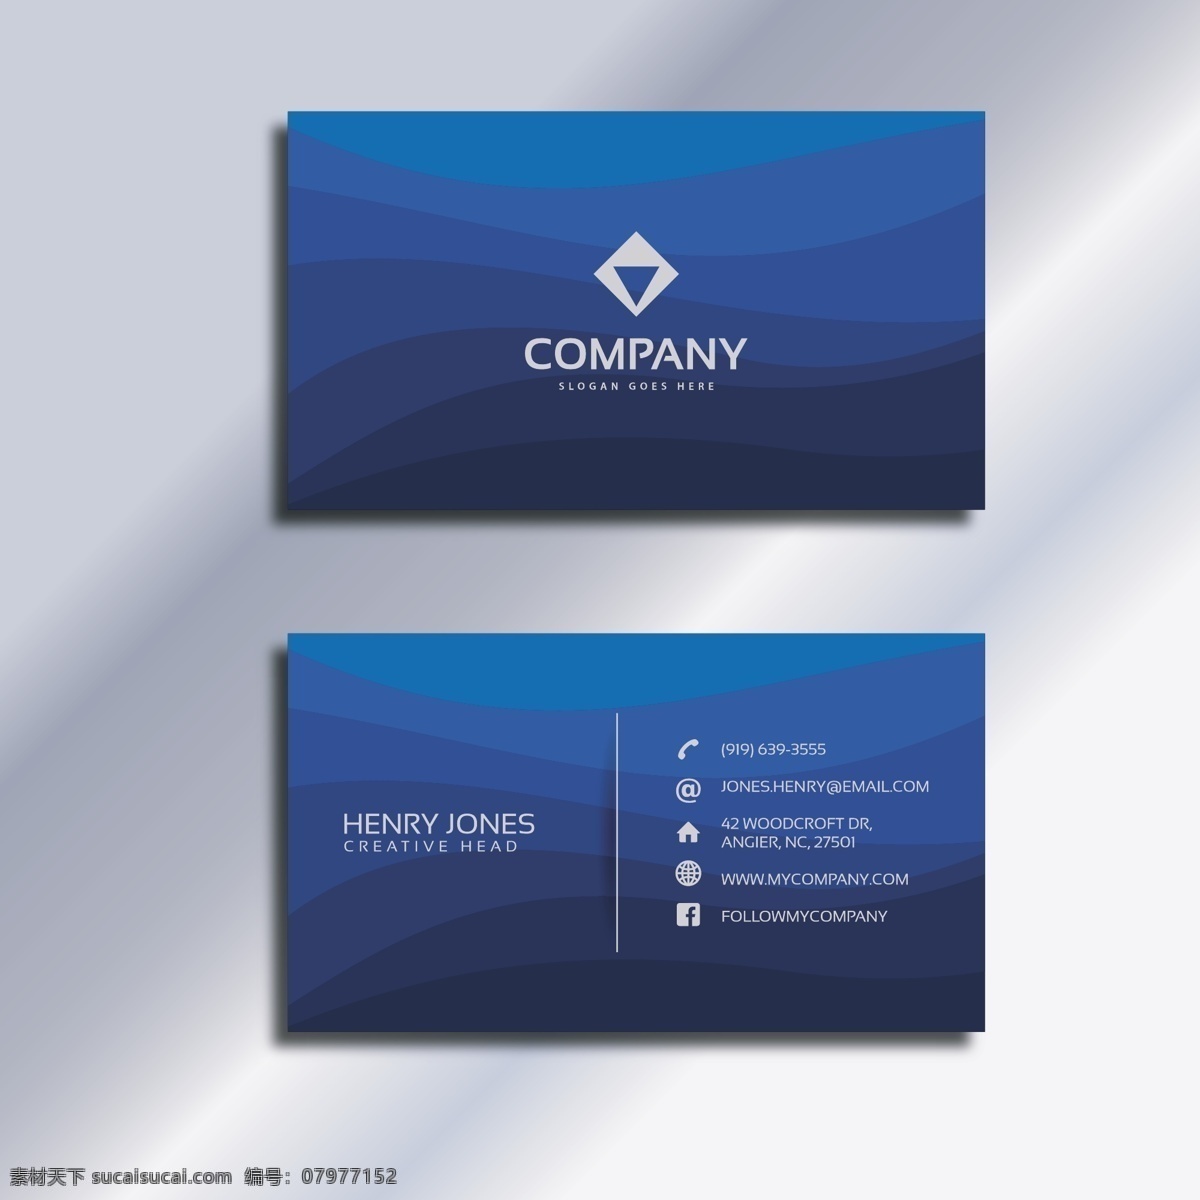 蓝色的名片 商标 名片 商务 抽象 卡片 模板 蓝色 办公室 展示 文具 公司 抽象标志 企业标识 品牌 现代 身份